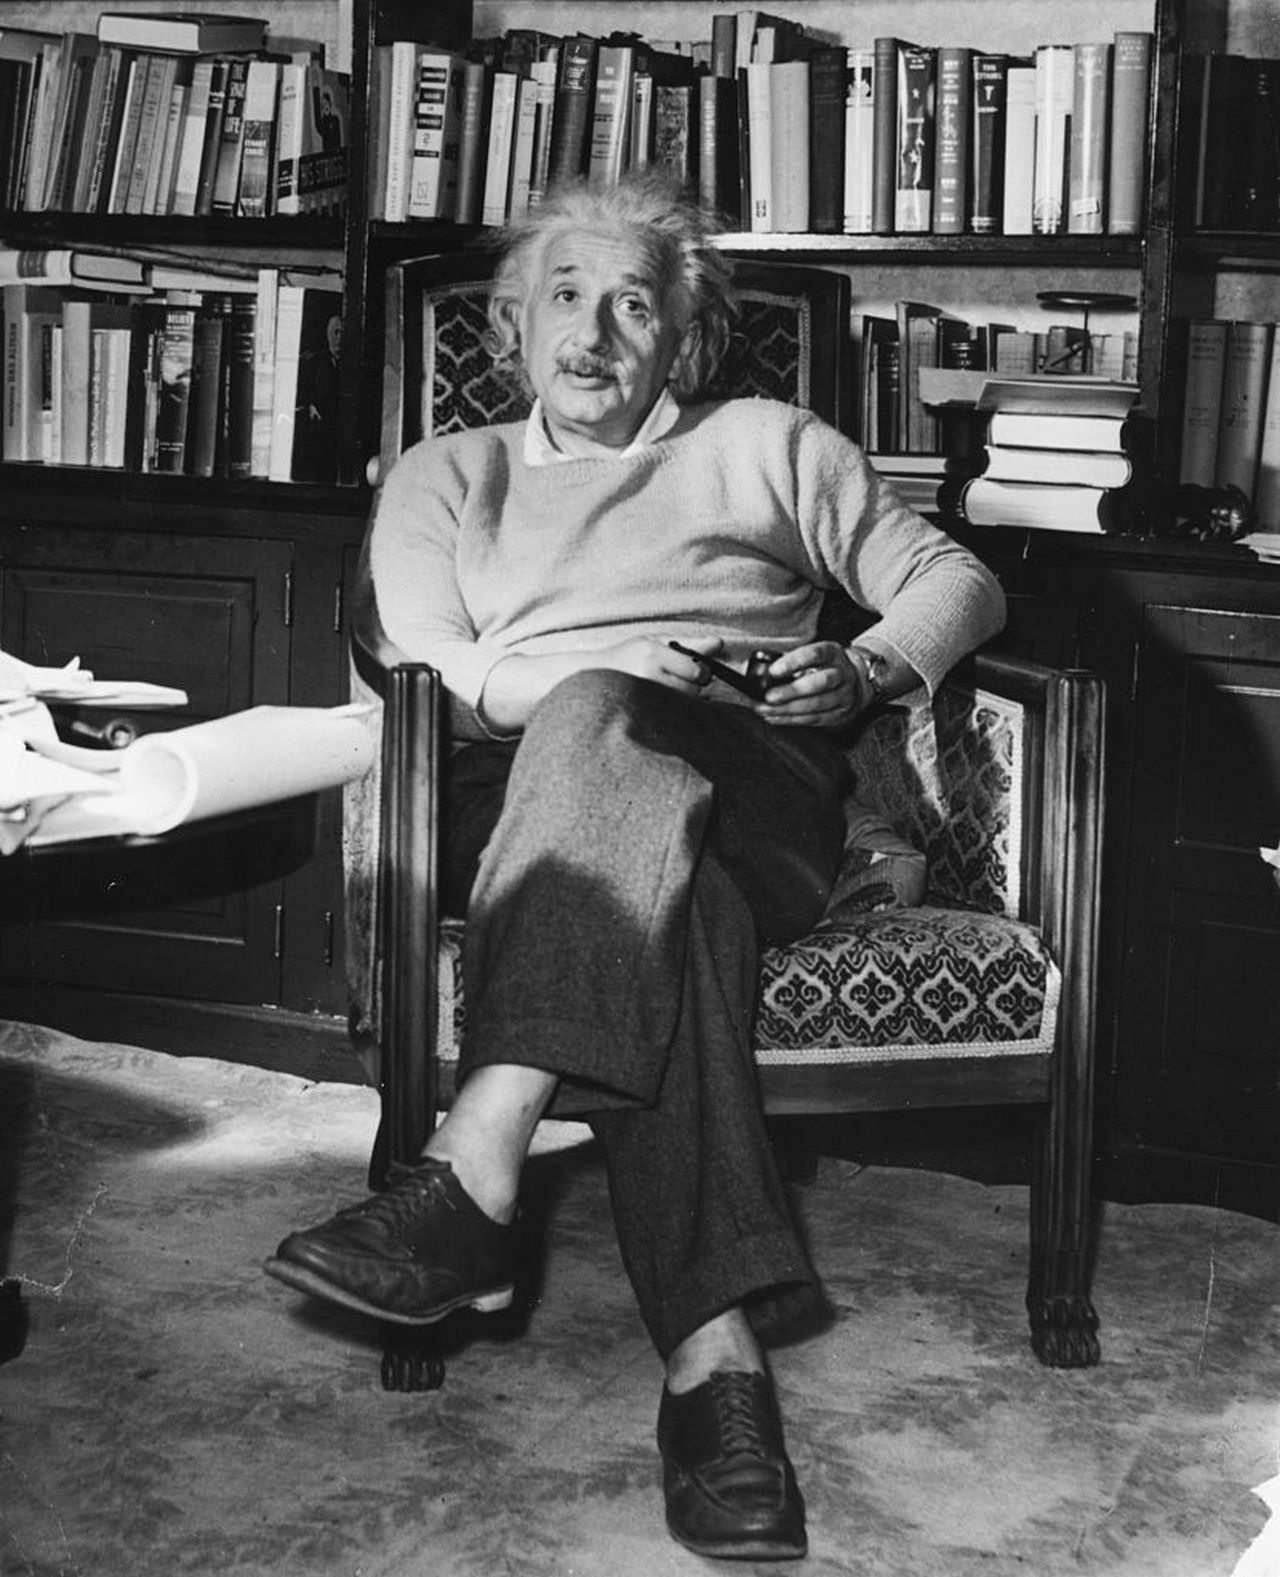 <p><strong>1. Той пише първата си научна статия, когато е на 16 години</strong>- Първоначално Айнщайн напуска училище на 15 години и се проваля на някои изпити, но това се дължи на лошото му владеене на френски като младеж.&nbsp;Той със сигурност обаче бил дете чудо и бил иотличник по латински, геометрия, математика и фантастичен&nbsp;на цигулка. На 16-годишна възраст Айнщайн написва първата си научна статия, наречена &bdquo;Изследване на състоянието на етера в магнитни полета&ldquo;.</p>